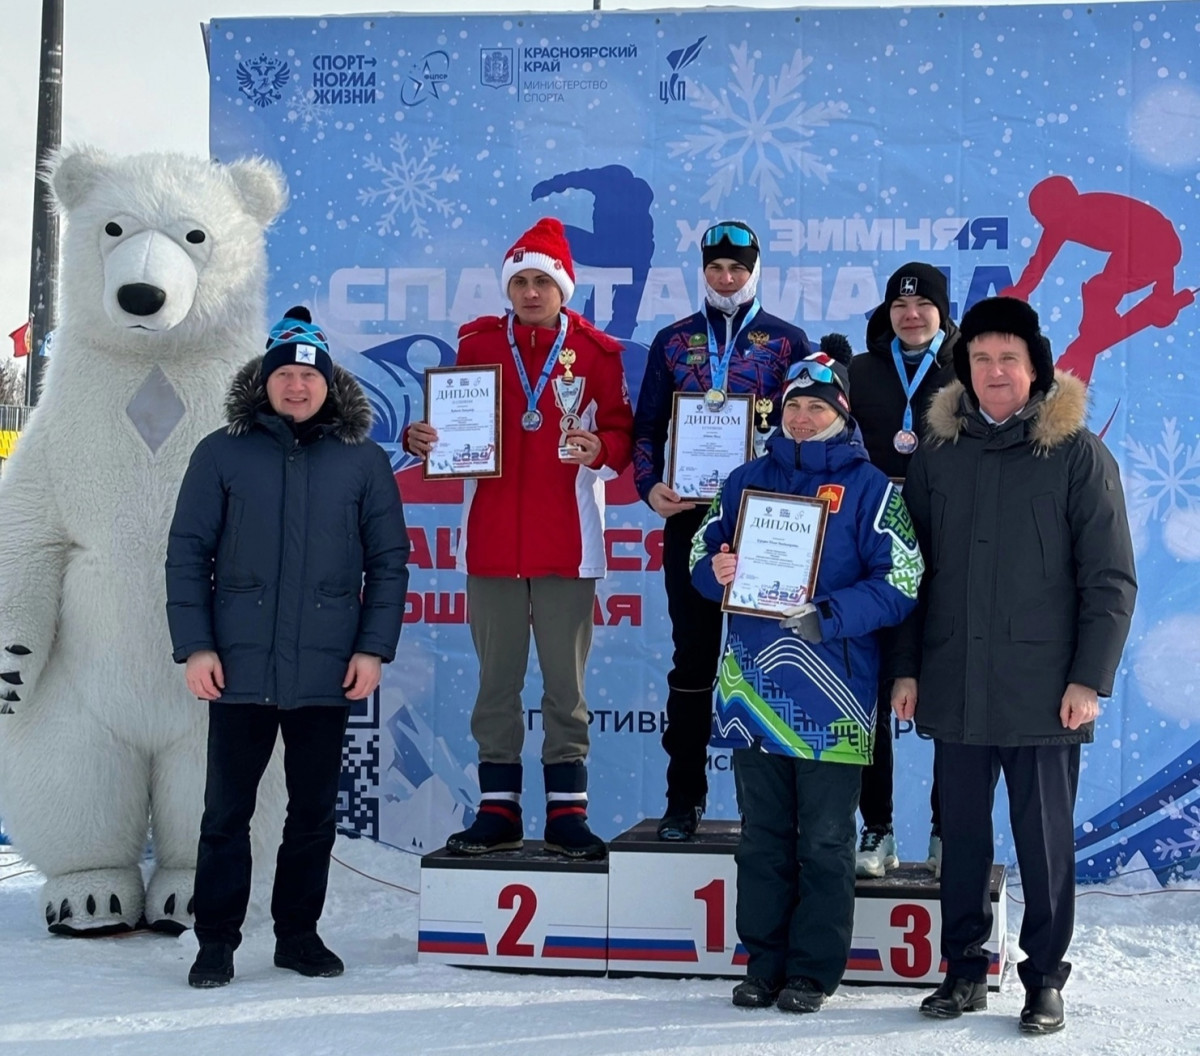 Нижегородцы завоевали серебро и бронзу на всероссийской Спартакиаде по спортивному ориентированию на лыжах